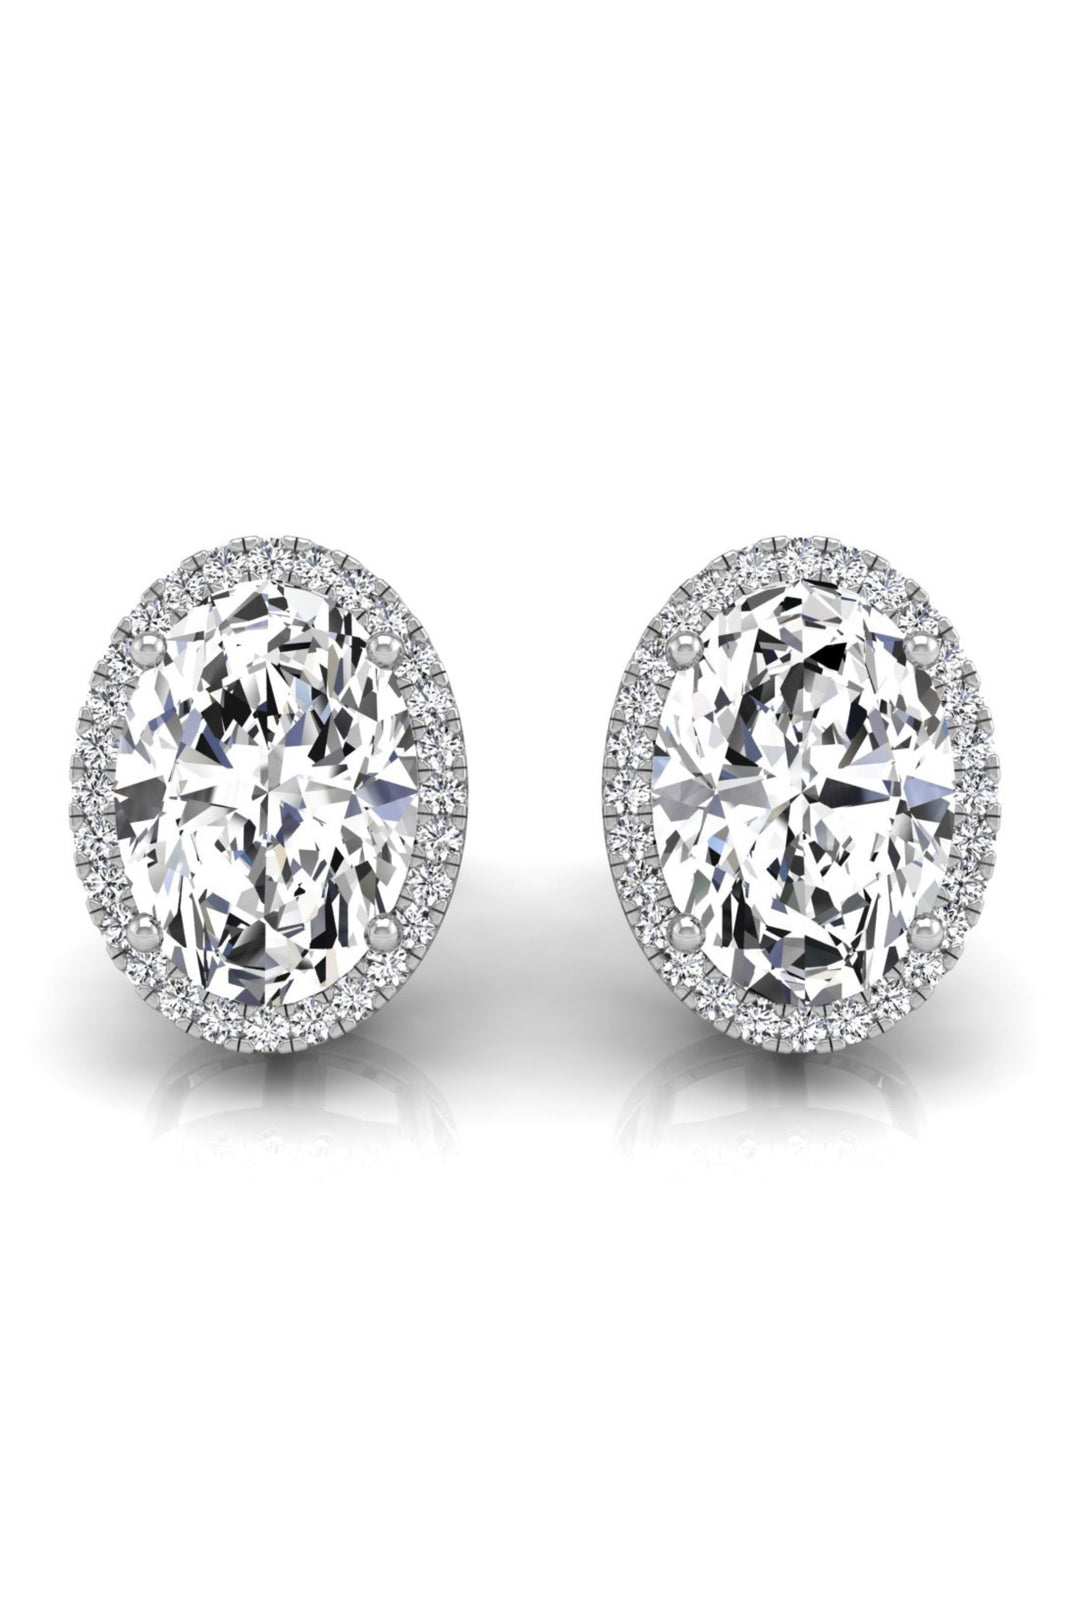 Oval Cut Halo Diamond Moissanite Stud Earrings for Women